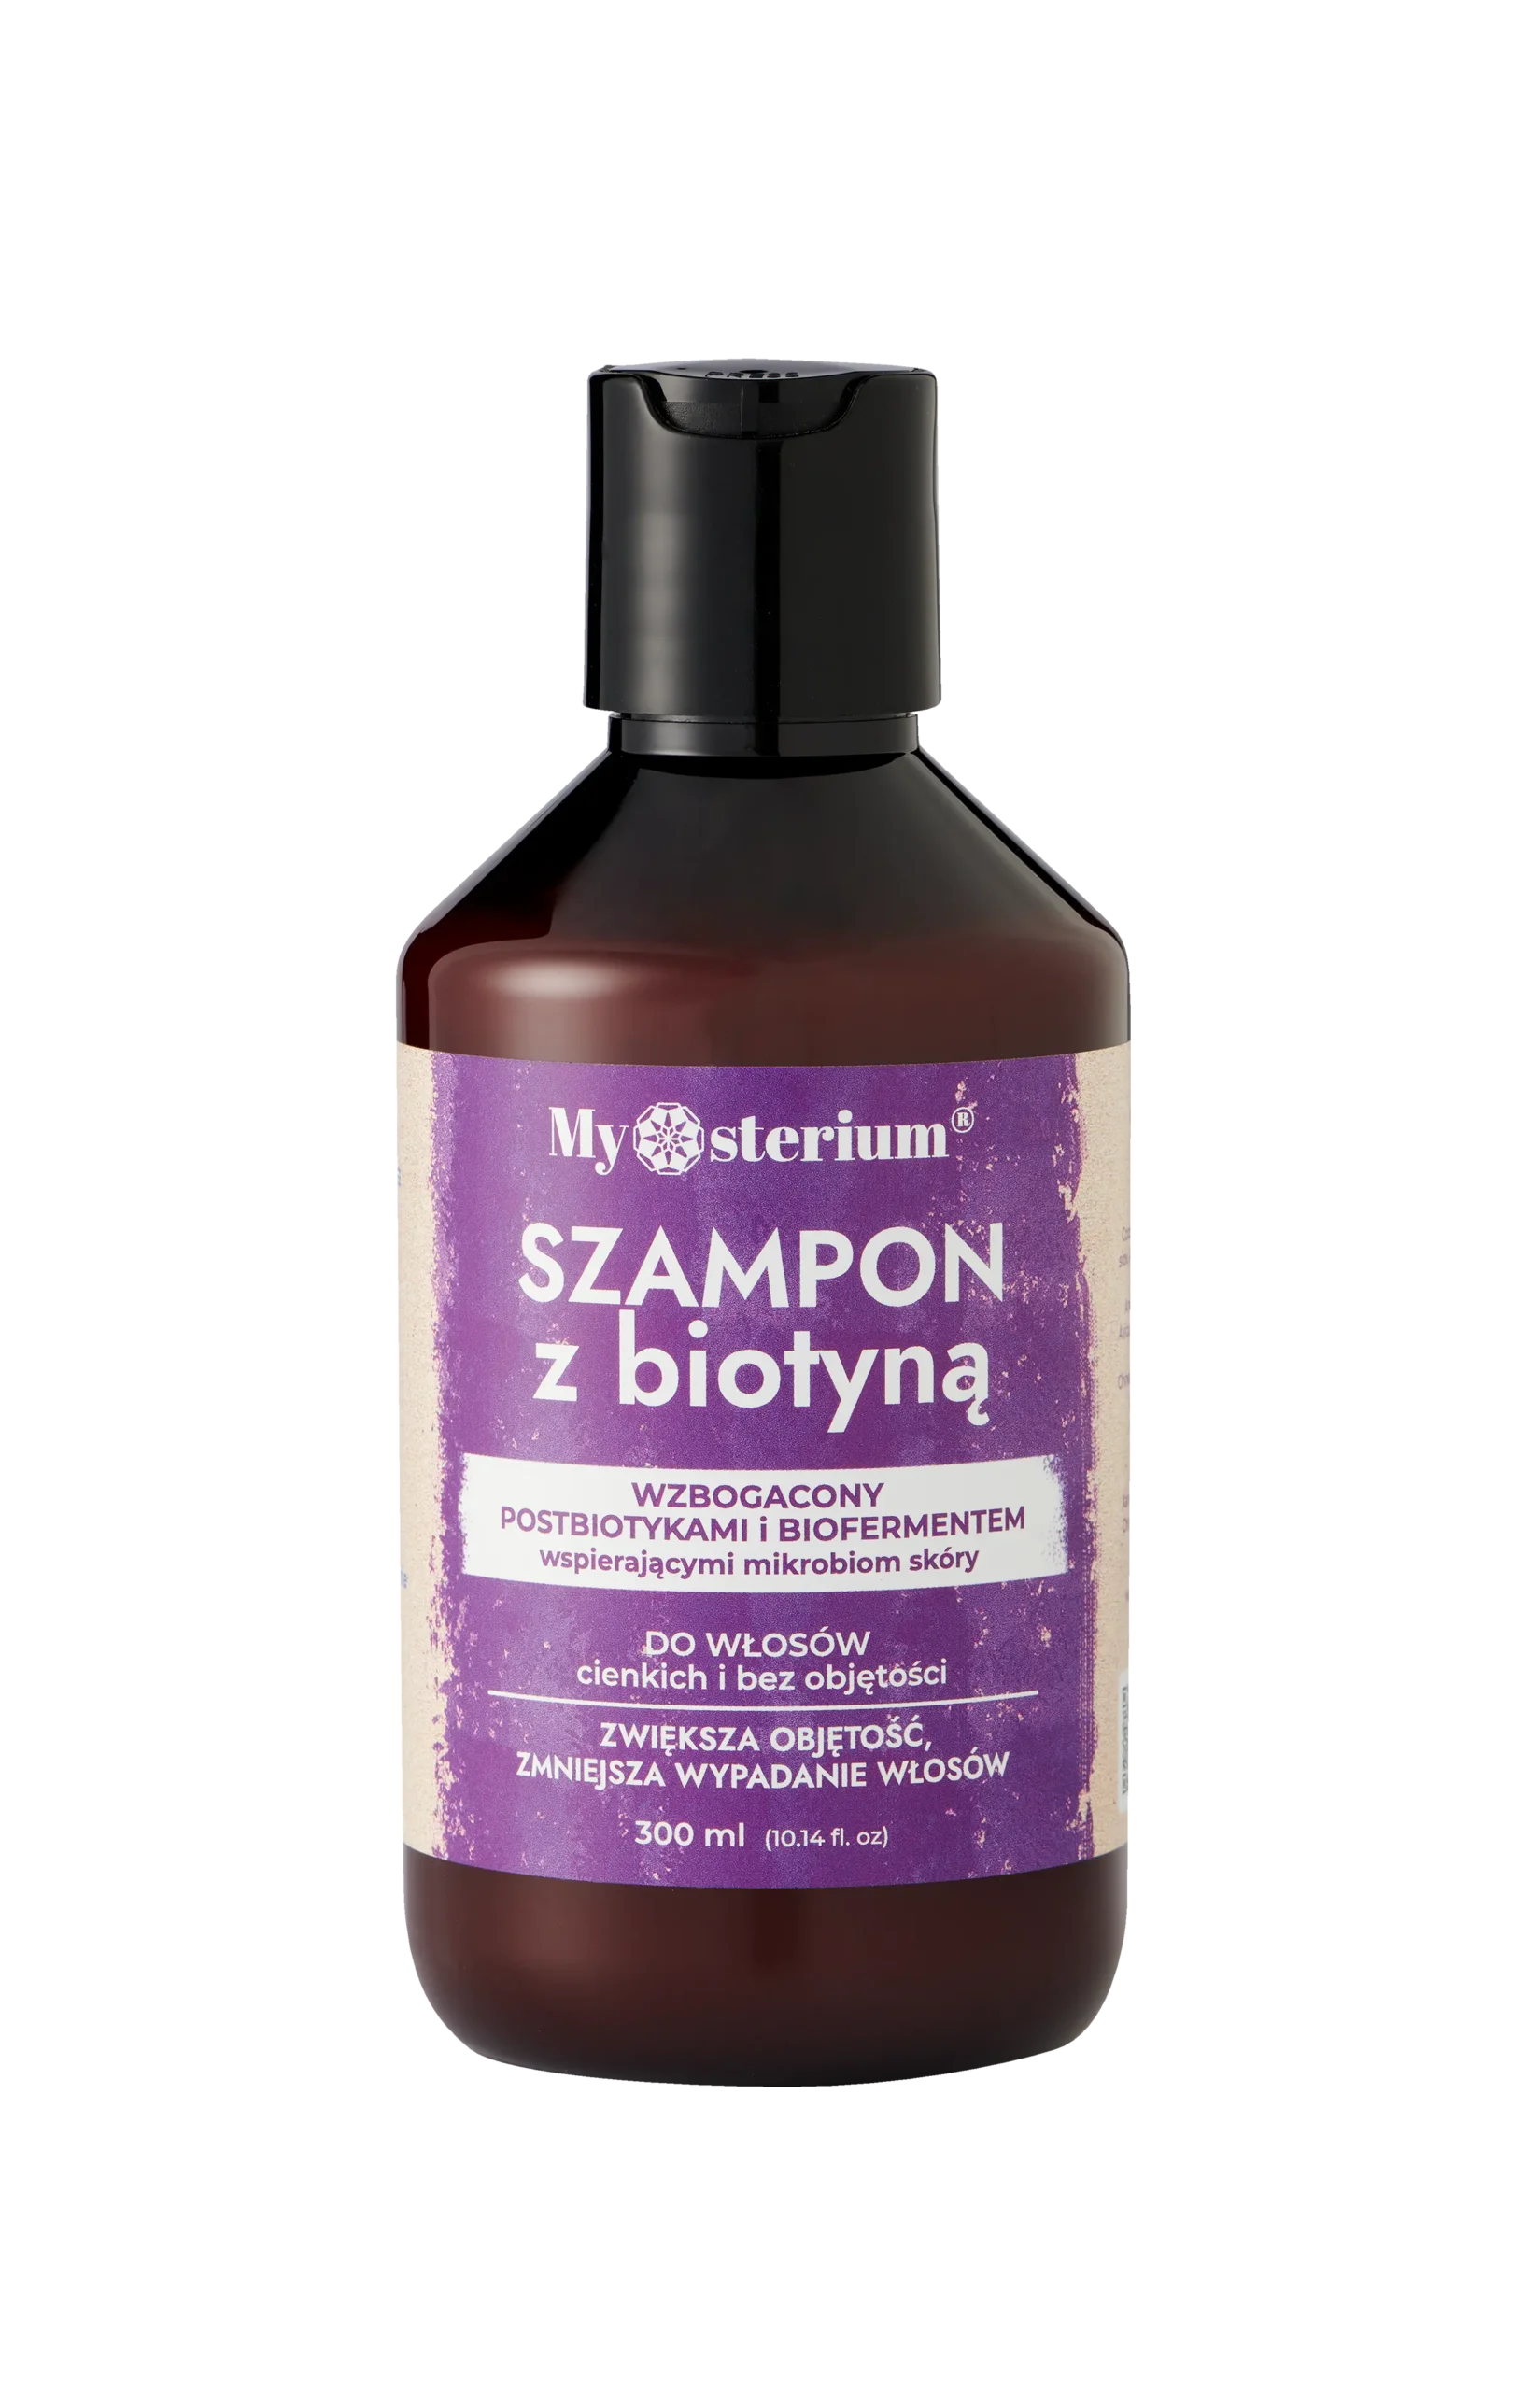 mysterium szampon biotyna